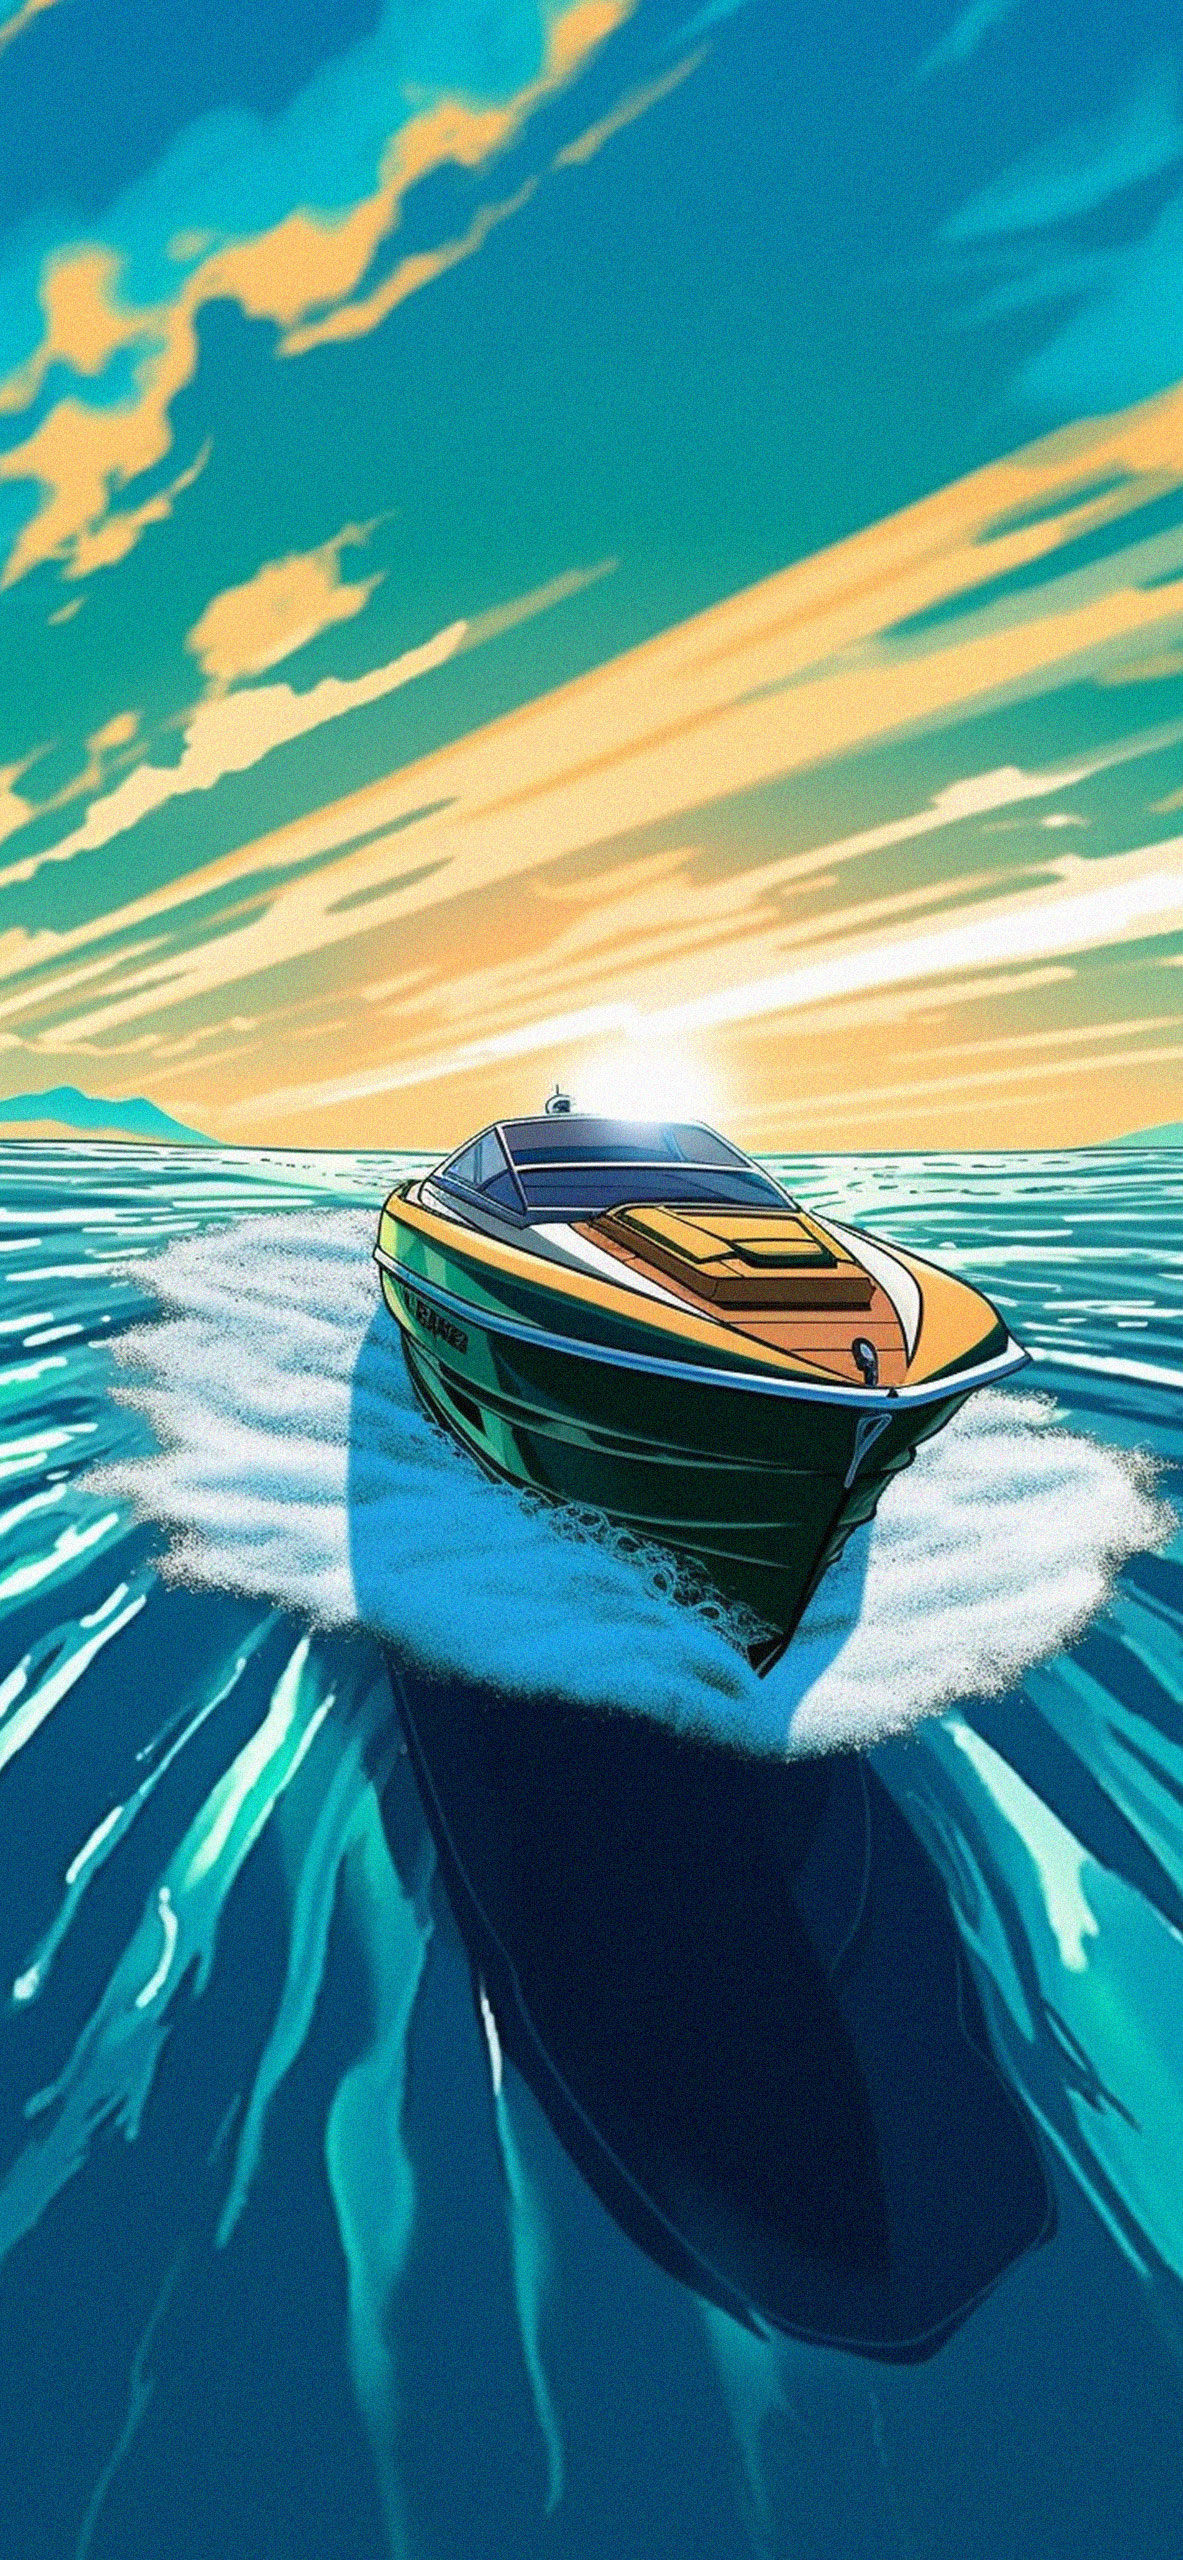 Boat in sea wallpaper ⛵ | Water art, Scenery wallpaper, Ocean wallpaper